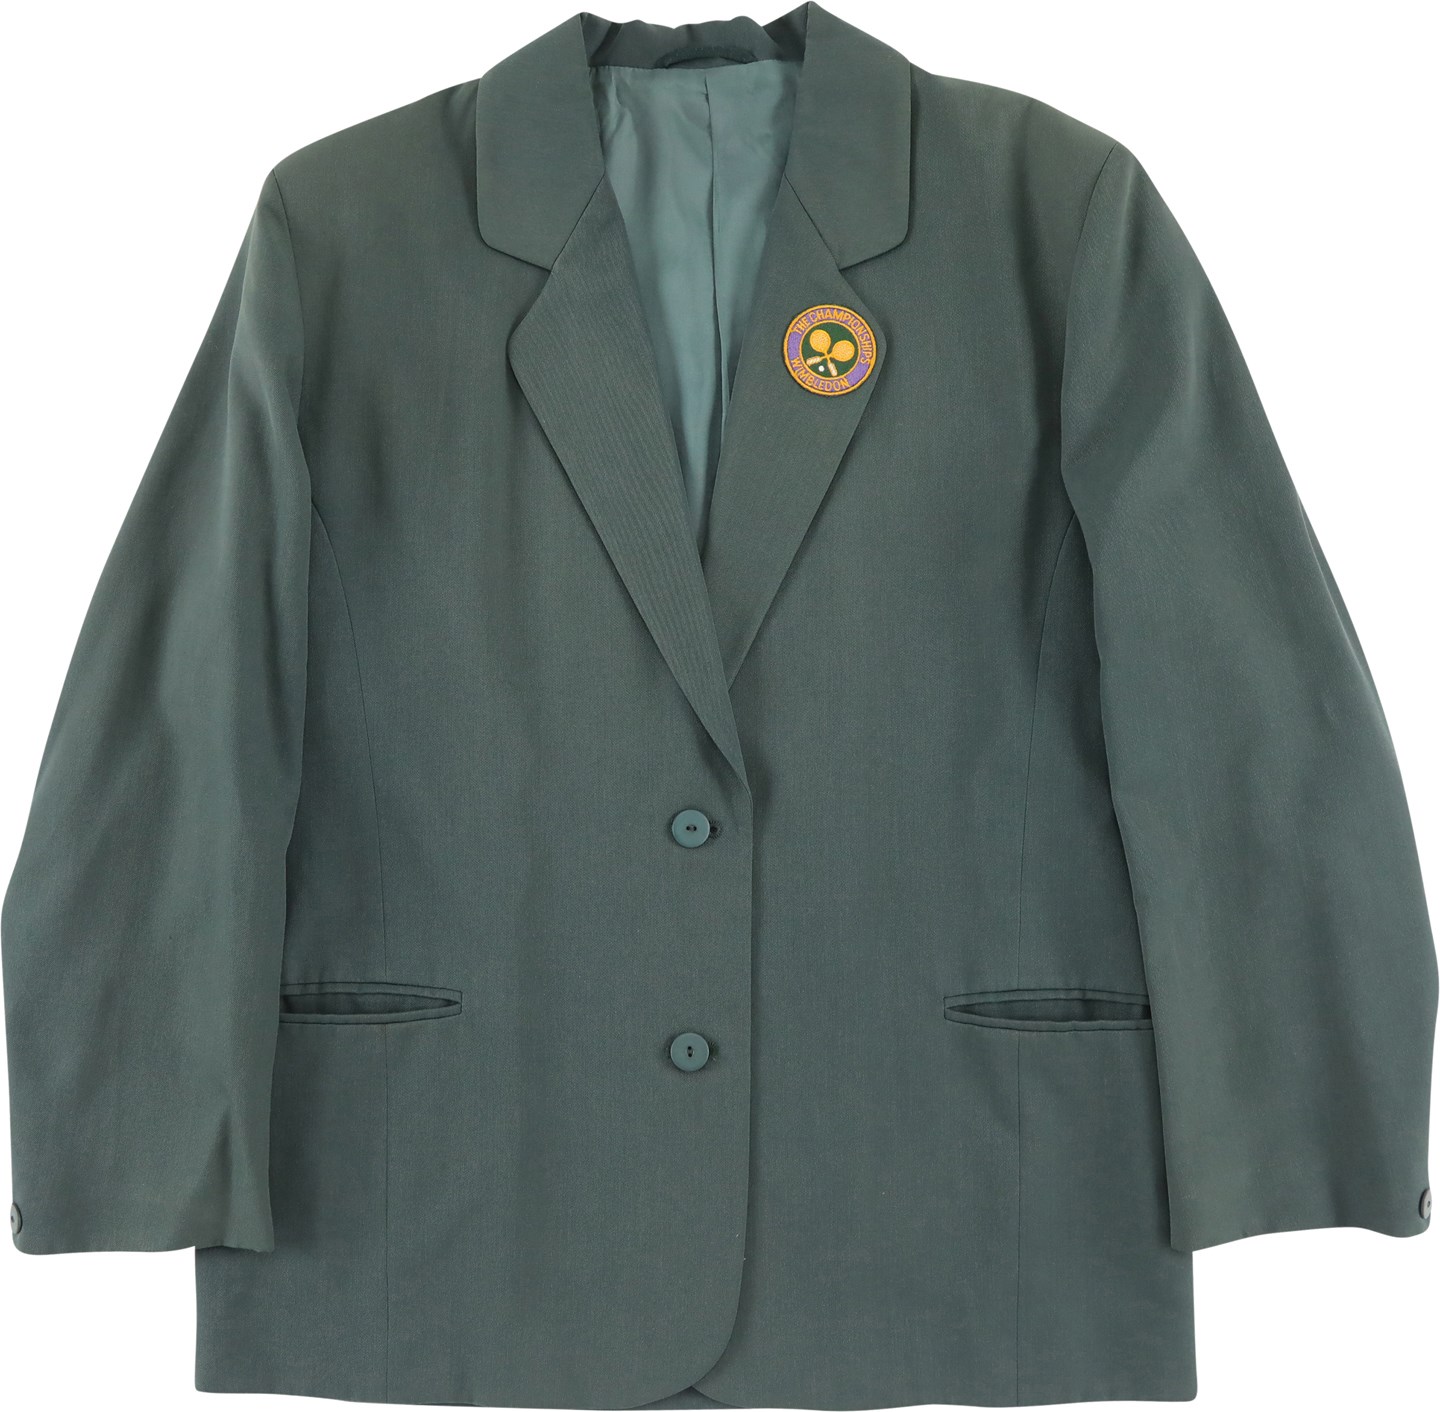 - Circa 1980s Wimbledon Umpire's Jacket